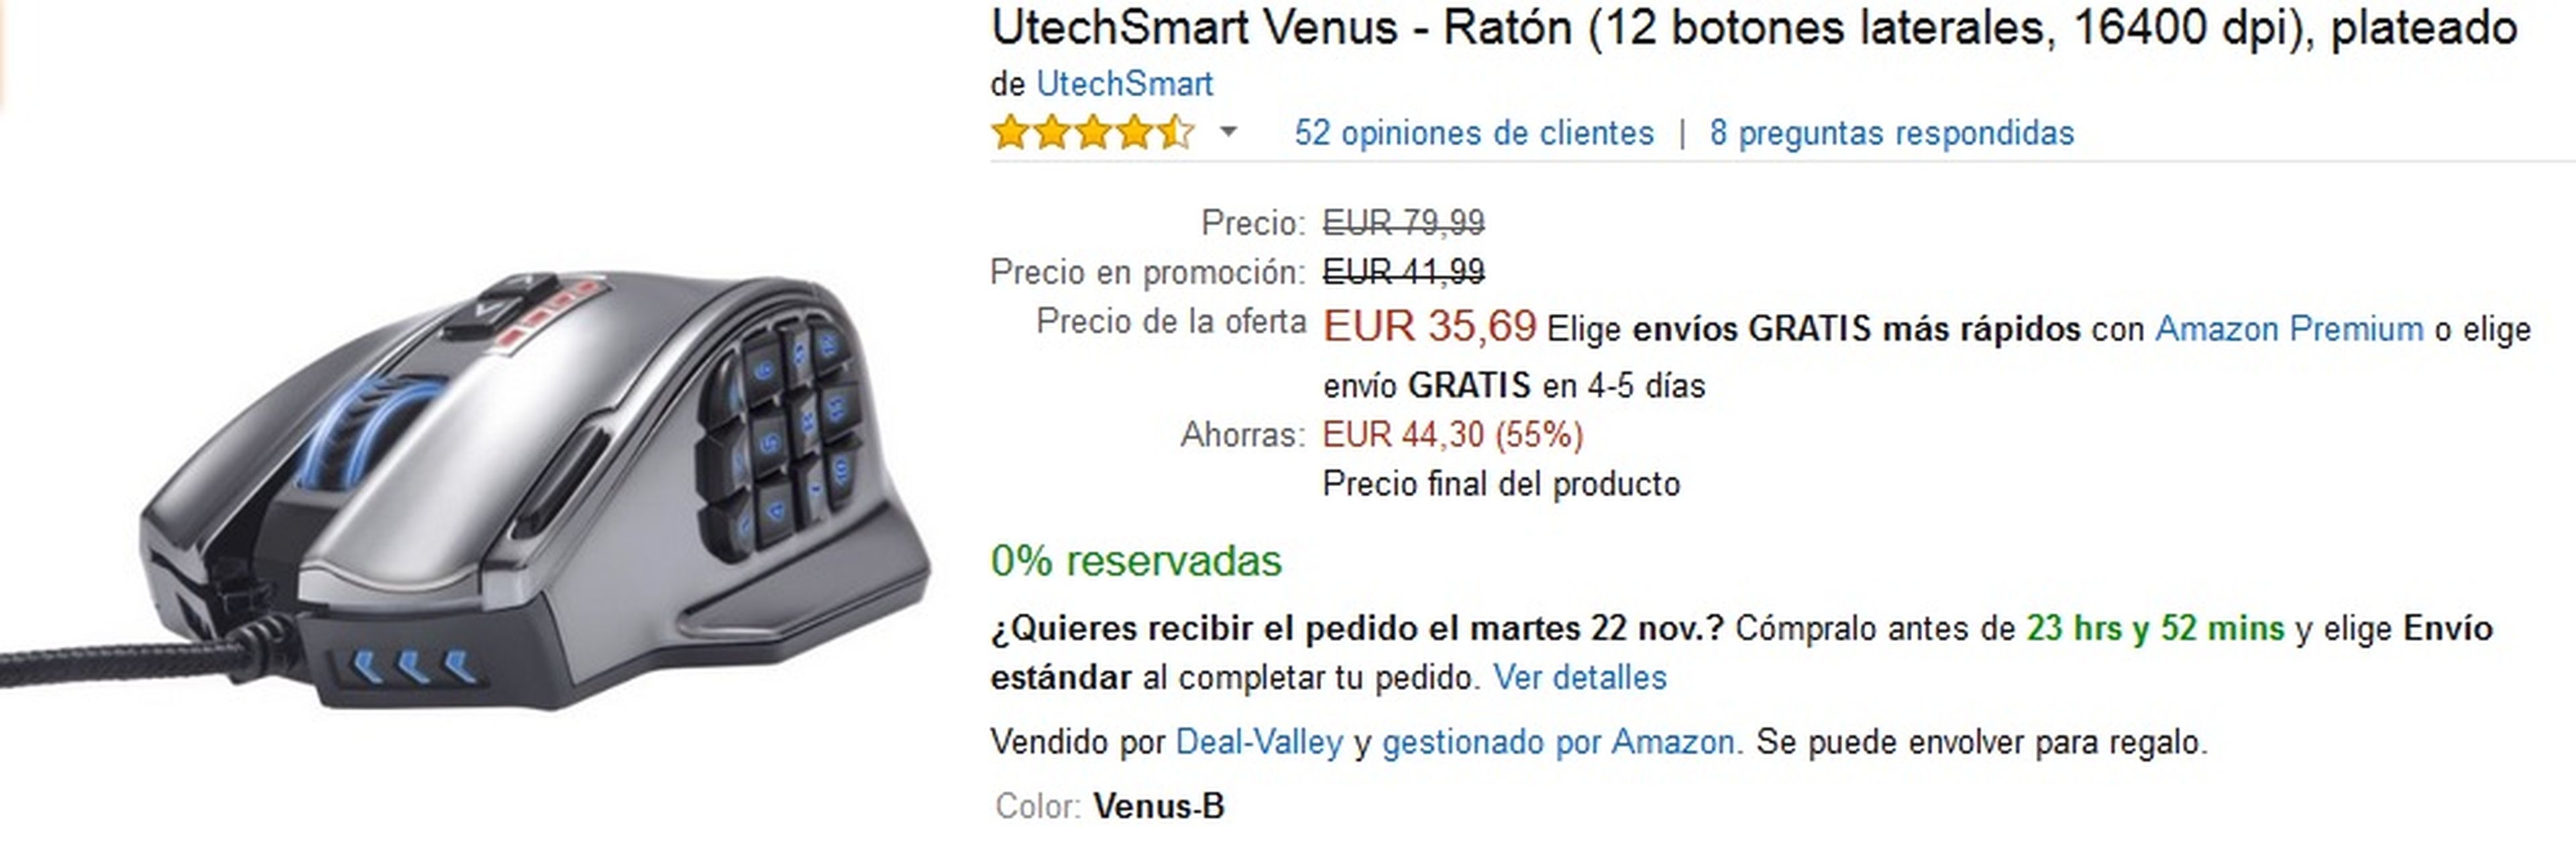 Ratón UtechSmart Venus por 35,69 €